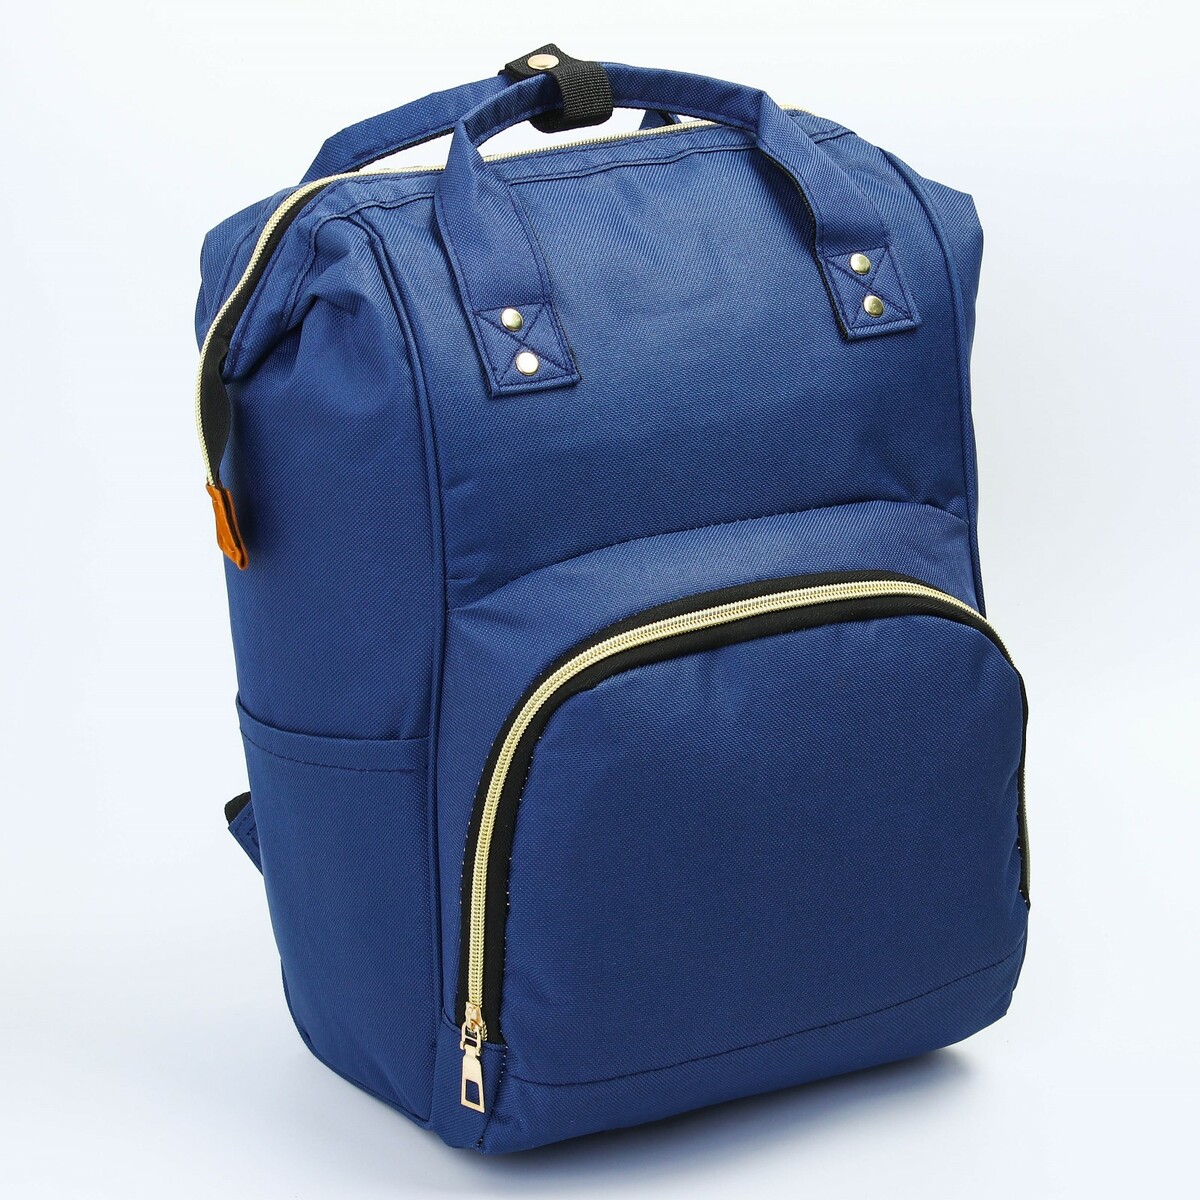 Рюкзак женский с термокарманом, термосумка - портфель, цвет синий рюкзак kingkong i 10 wb 9062 черн средний фоторюкзак